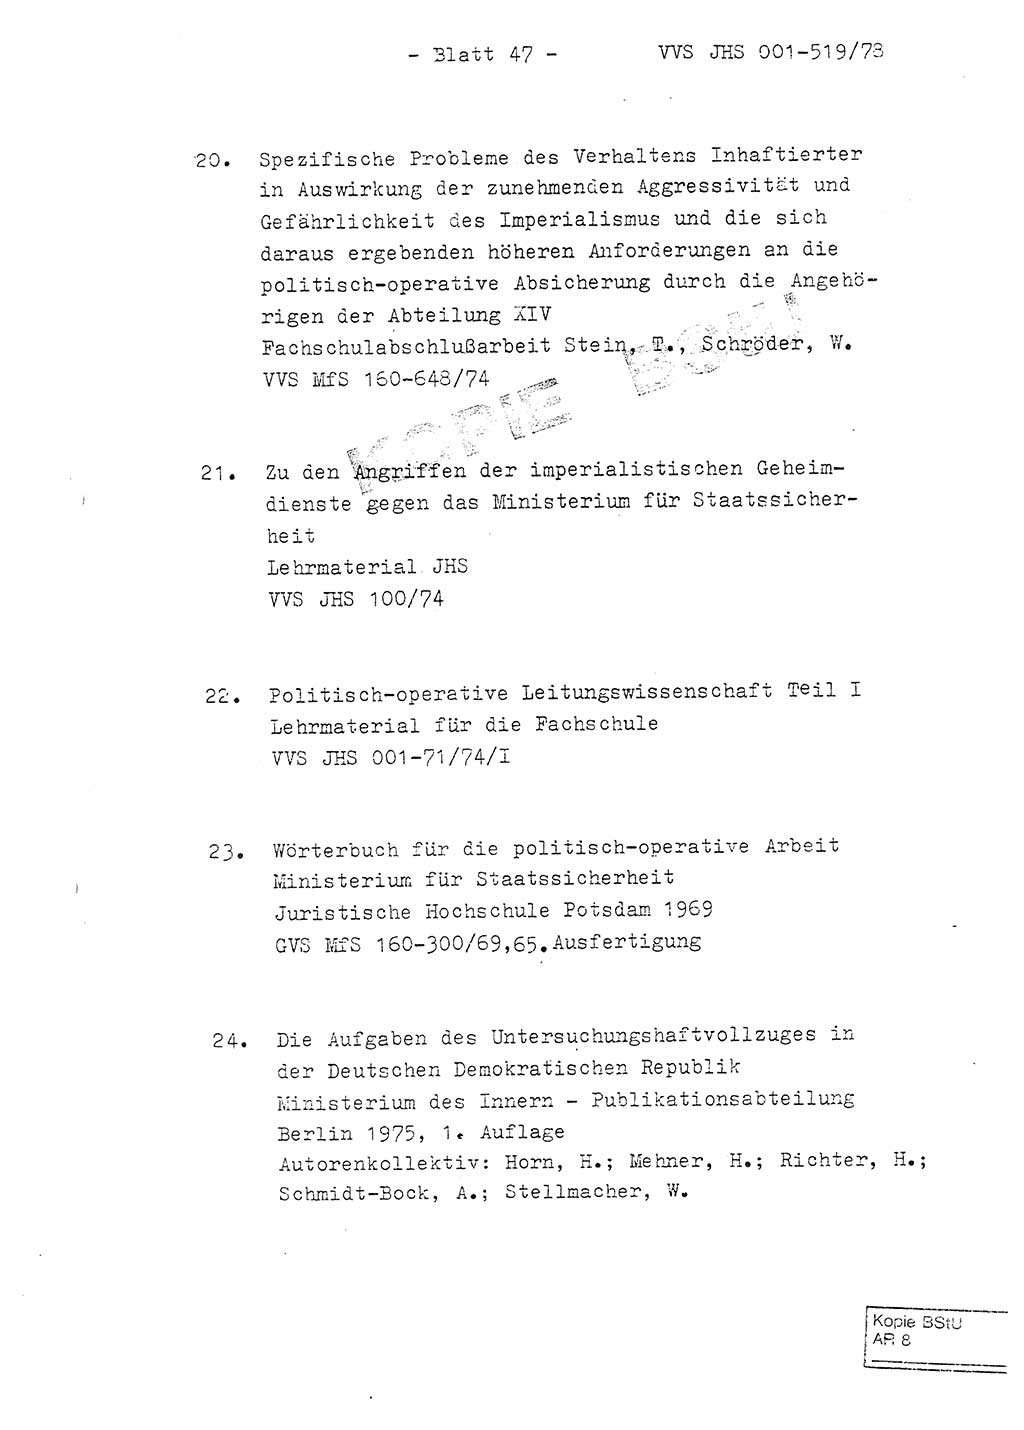 Fachschulabschlußarbeit Hauptmann Alfons Lützelberger (Abt. ⅩⅣ), Ministerium für Staatssicherheit (MfS) [Deutsche Demokratische Republik (DDR)], Juristische Hochschule (JHS), Vertrauliche Verschlußsache (VVS) 001-519/78, Potsdam 1978, Blatt 47 (FS-Abschl.-Arb. MfS DDR JHS VVS 001-519/78 1978, Bl. 47)